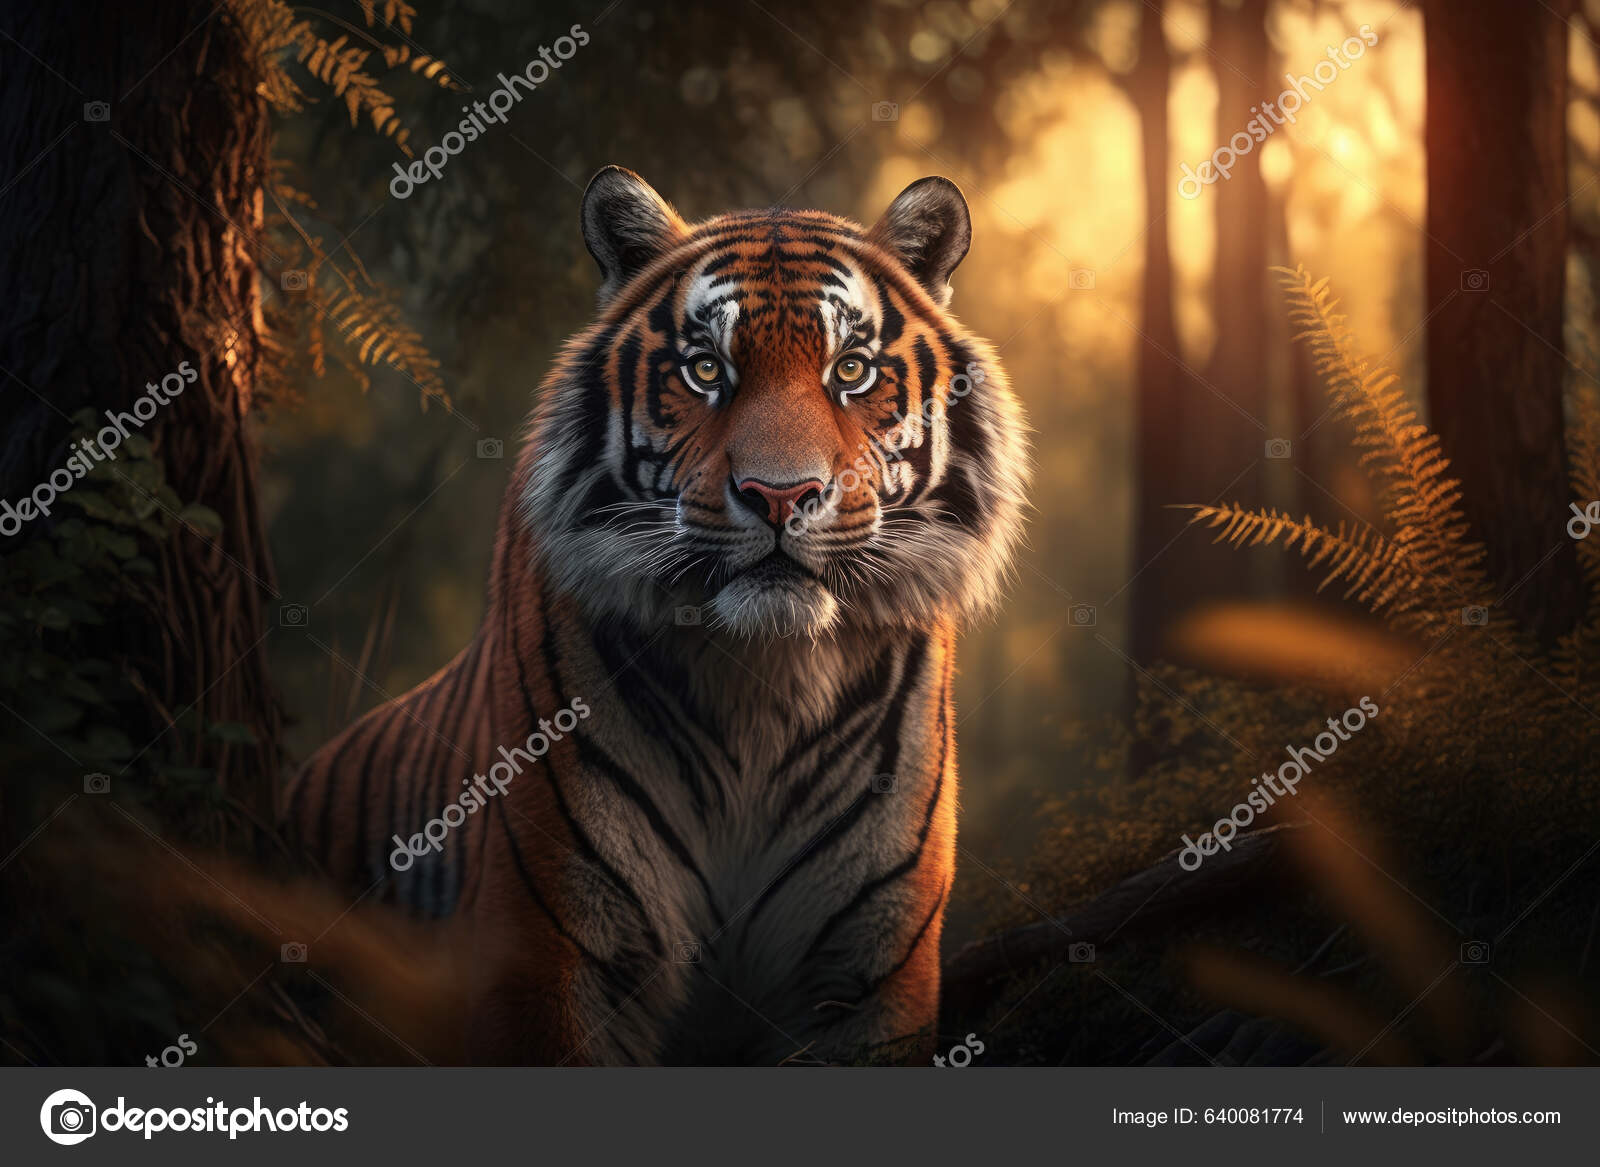 Tigre de bengala branco olhando para a câmera na florestadia